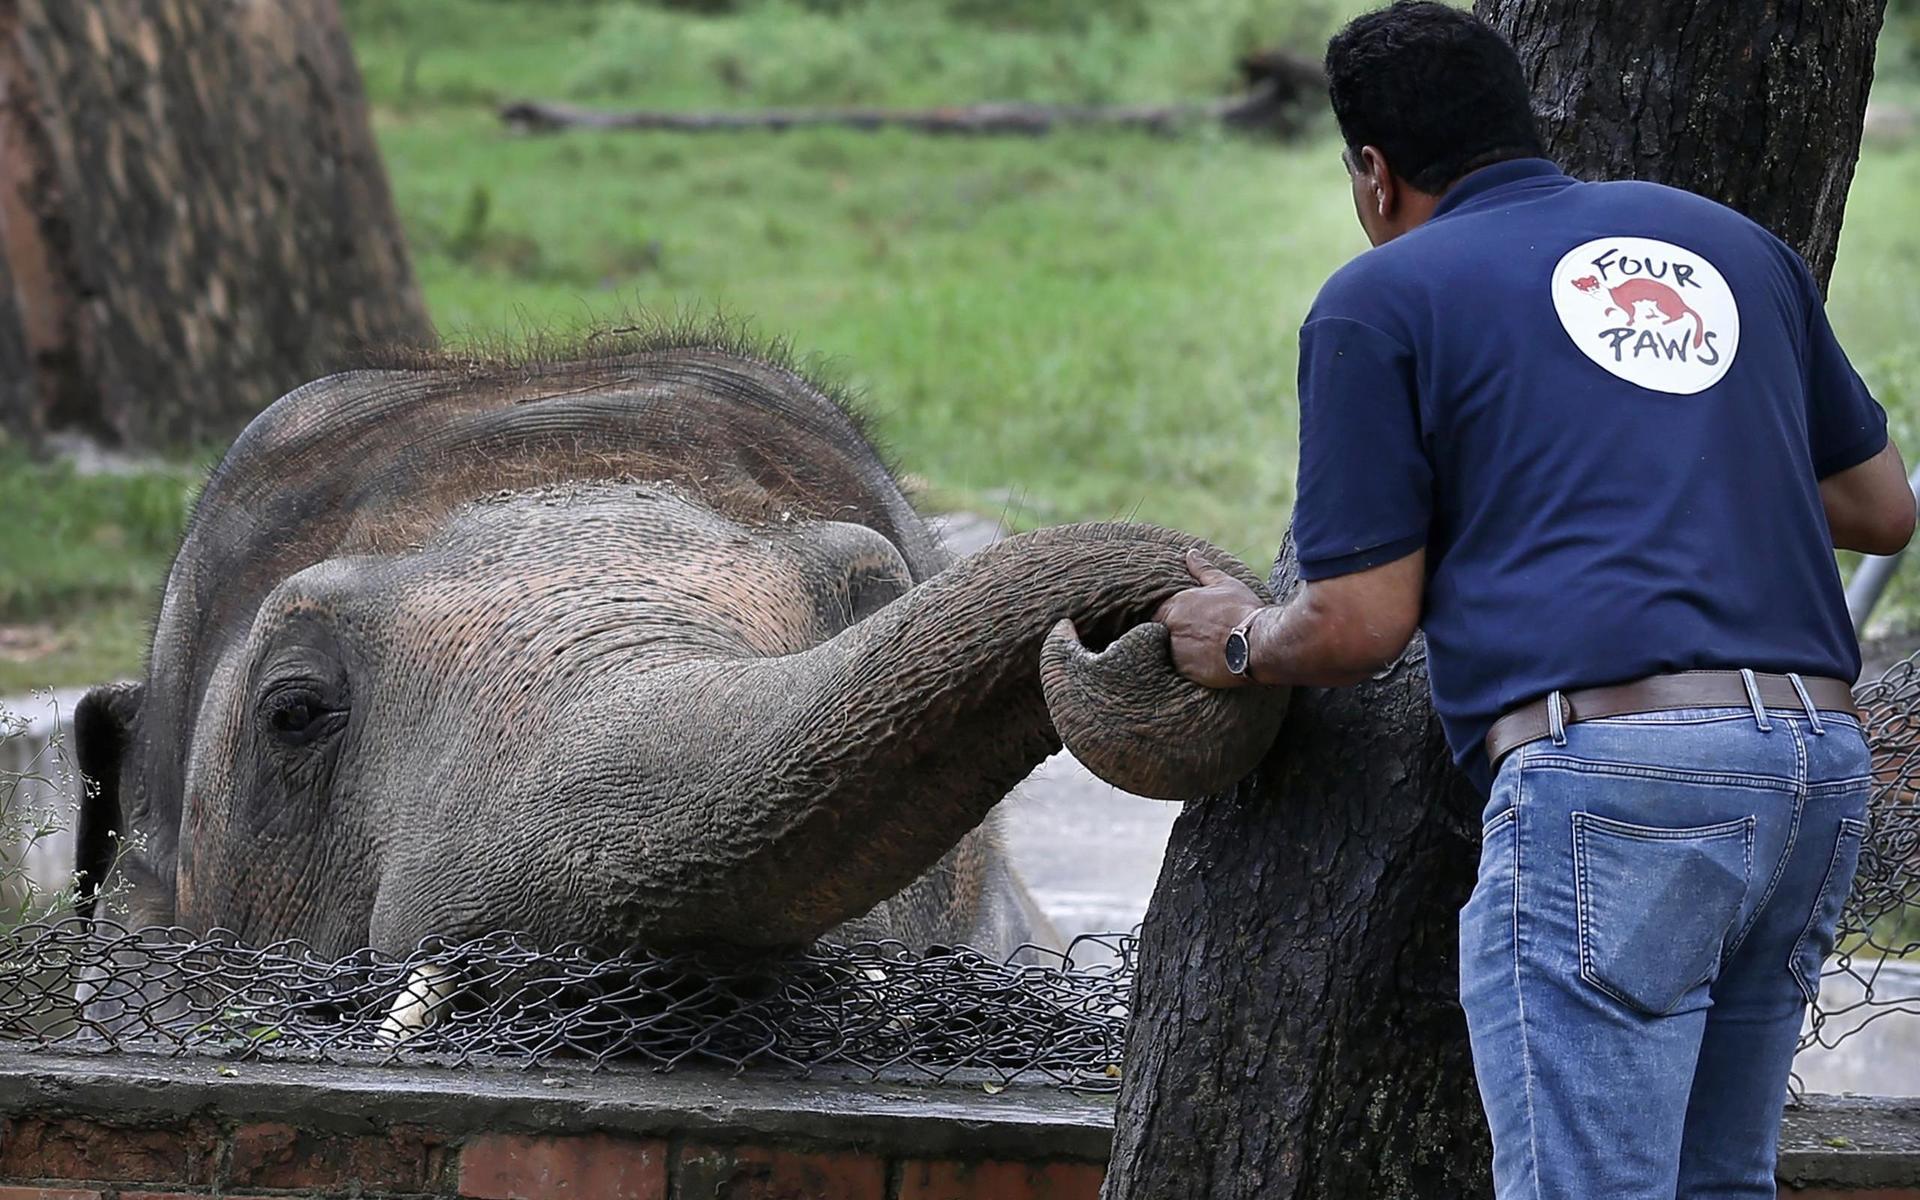 Världens ensammaste elefant Kaavan, förlorade sin partner 2012, sedan dess har han varit helt ensam. Det gjorde honom väldigt olycklig.